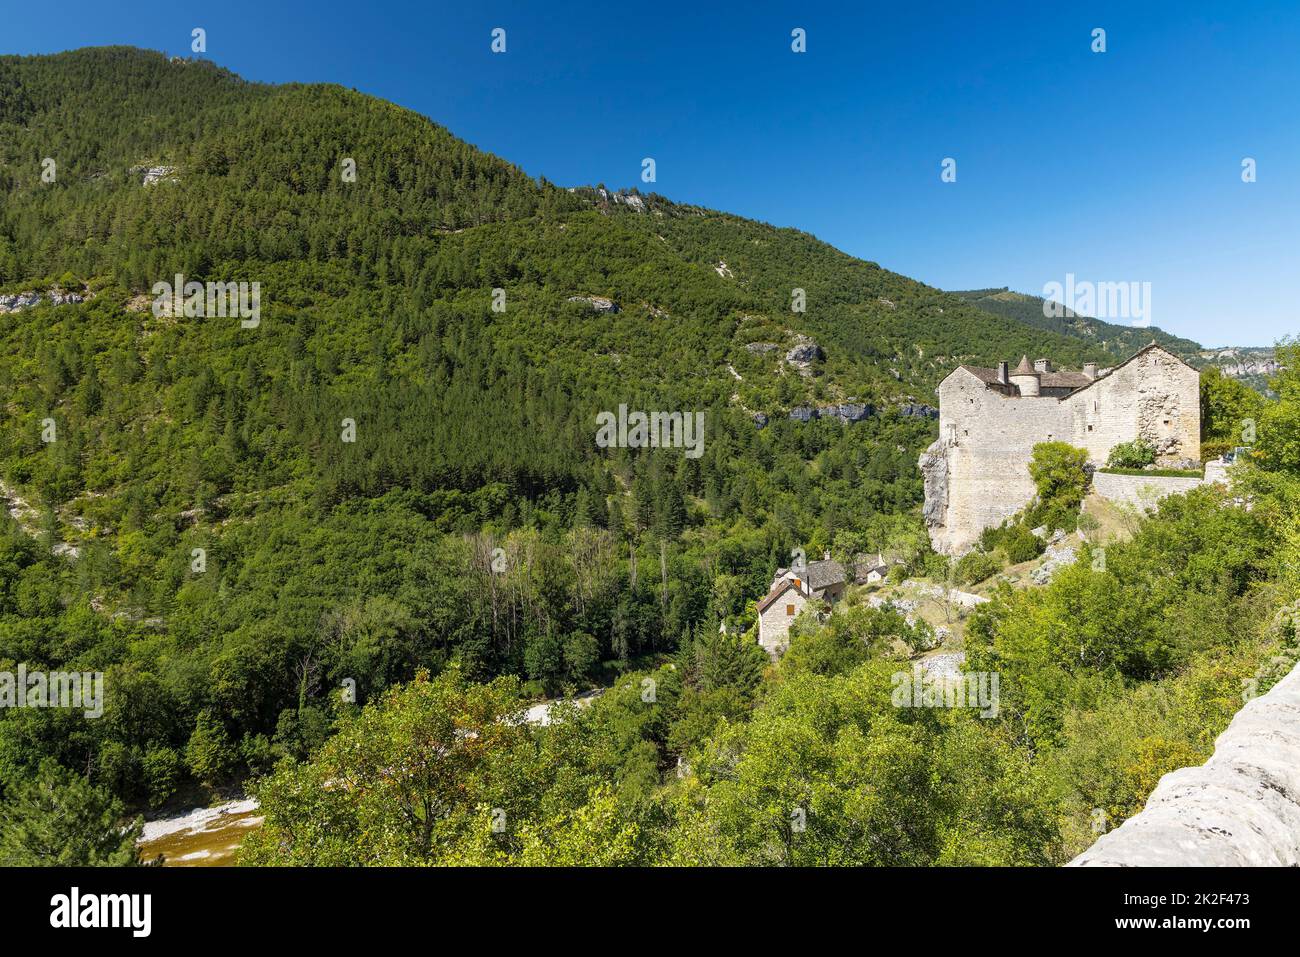 Gorges du Tarn, région de l'Occitania, département de l'Aveyron, France Banque D'Images